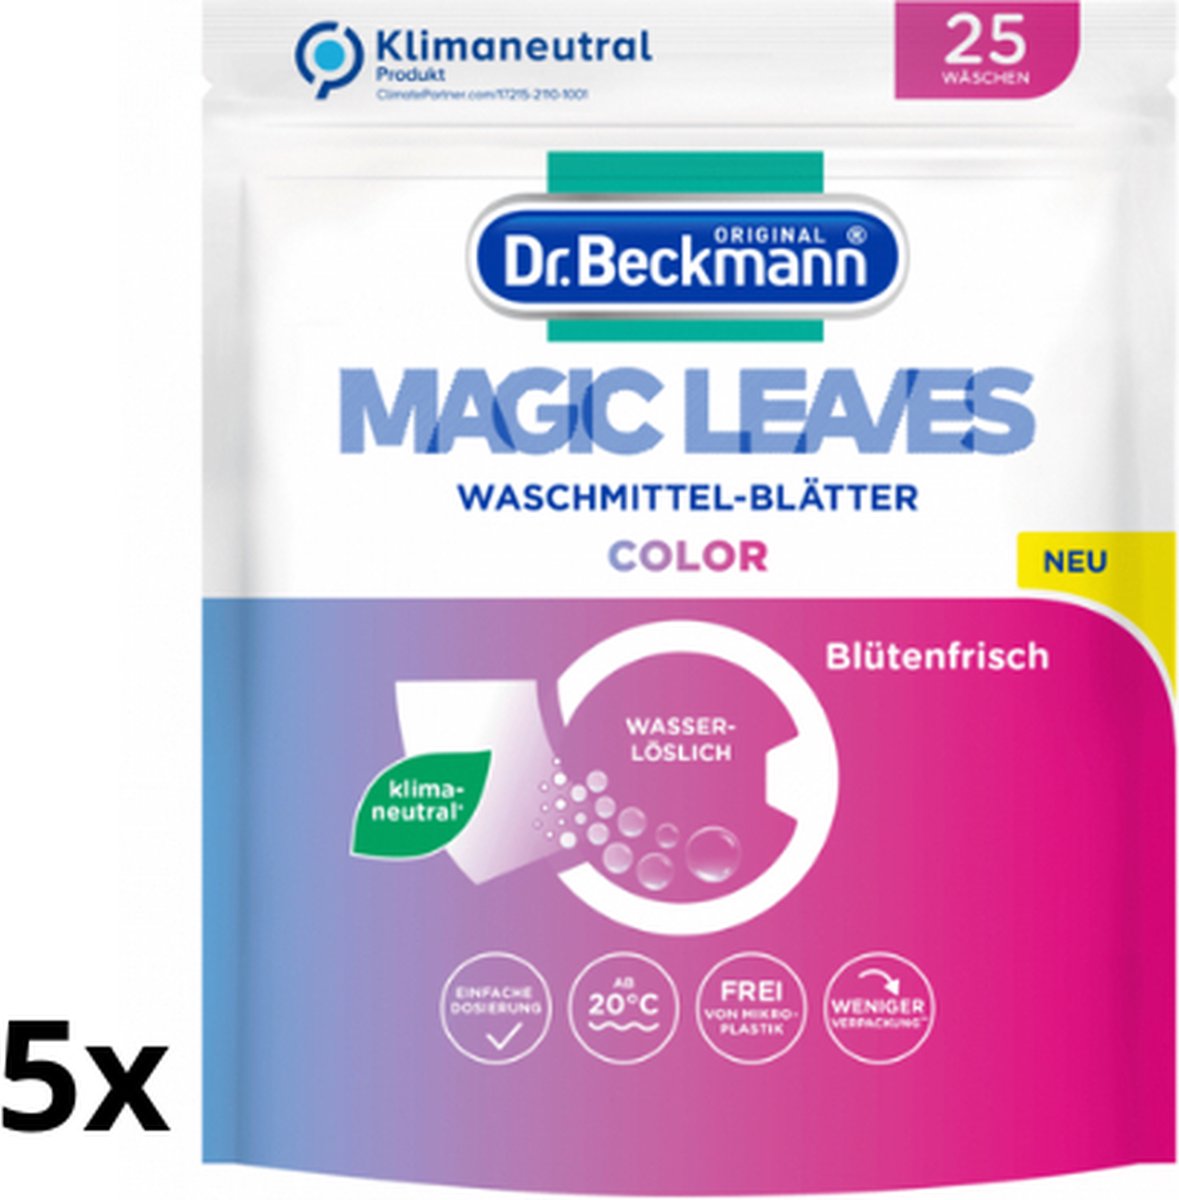 5x Dr. Beckmann Magic Leaves Color - 5x 25 wasvellen - 125 wasbeurten - Wasmiddel bladen - Milieuvriendelijk